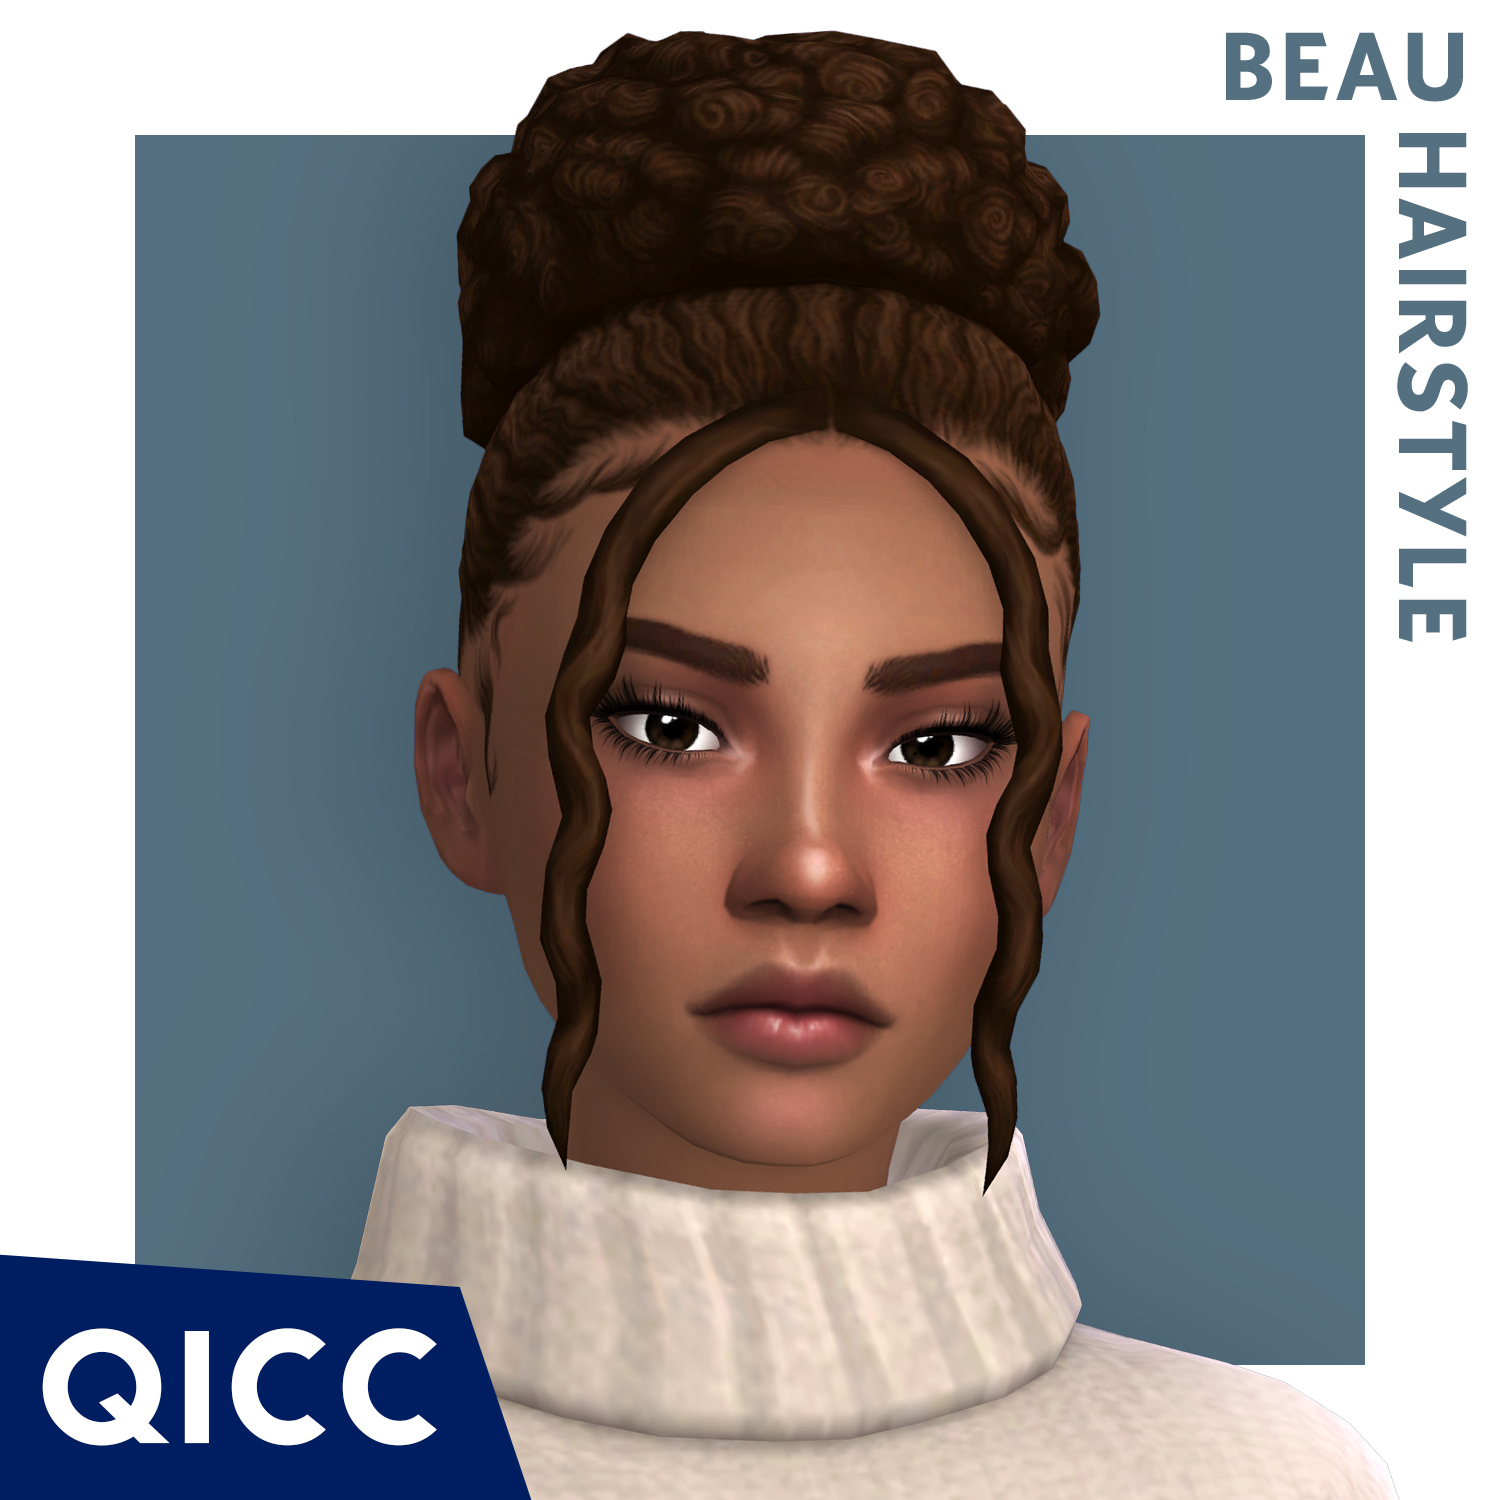 QICC - Beau Hair project avatar